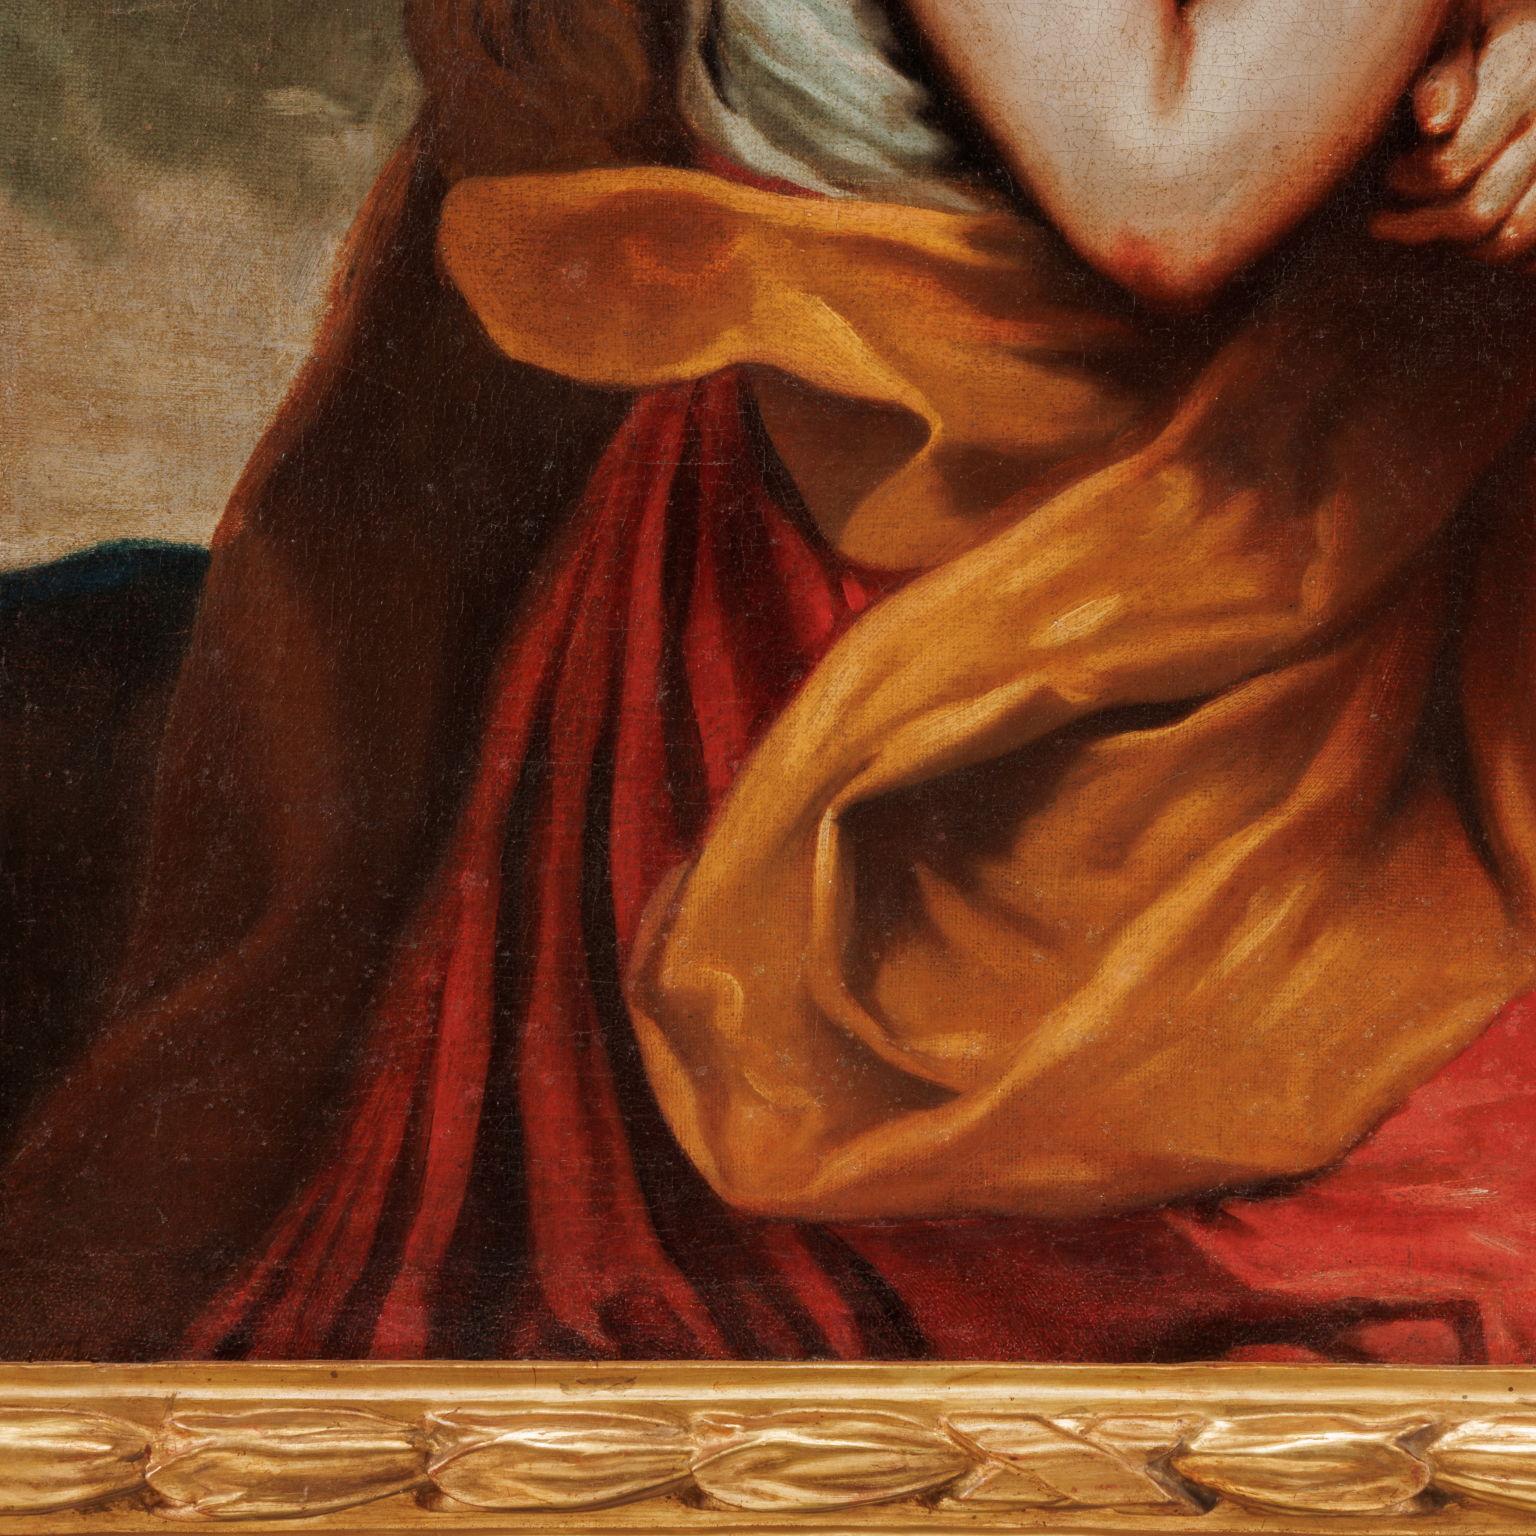 Gemalt in Öl auf Leinwand. Die Figur der Magdalena ist hier der Tradition entsprechend mit langen roten Haaren dargestellt; mit einer Geste trauriger Hingabe richtet sie ihren Blick auf das Kruzifix, das sie mit der linken Hand an den rechten Arm